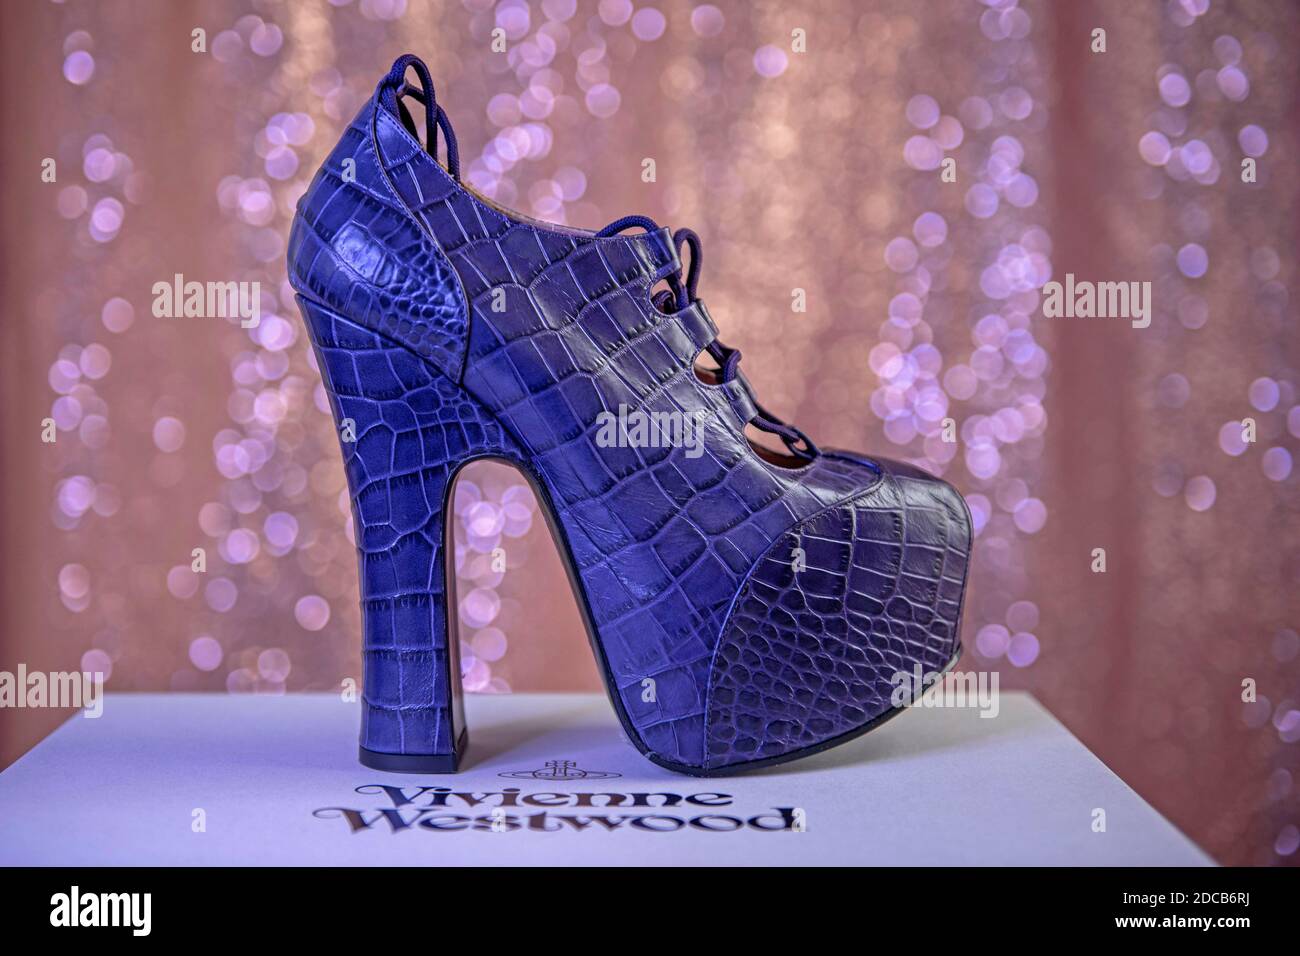 Buy > vivienne westwood platform heels 2012 > in stock